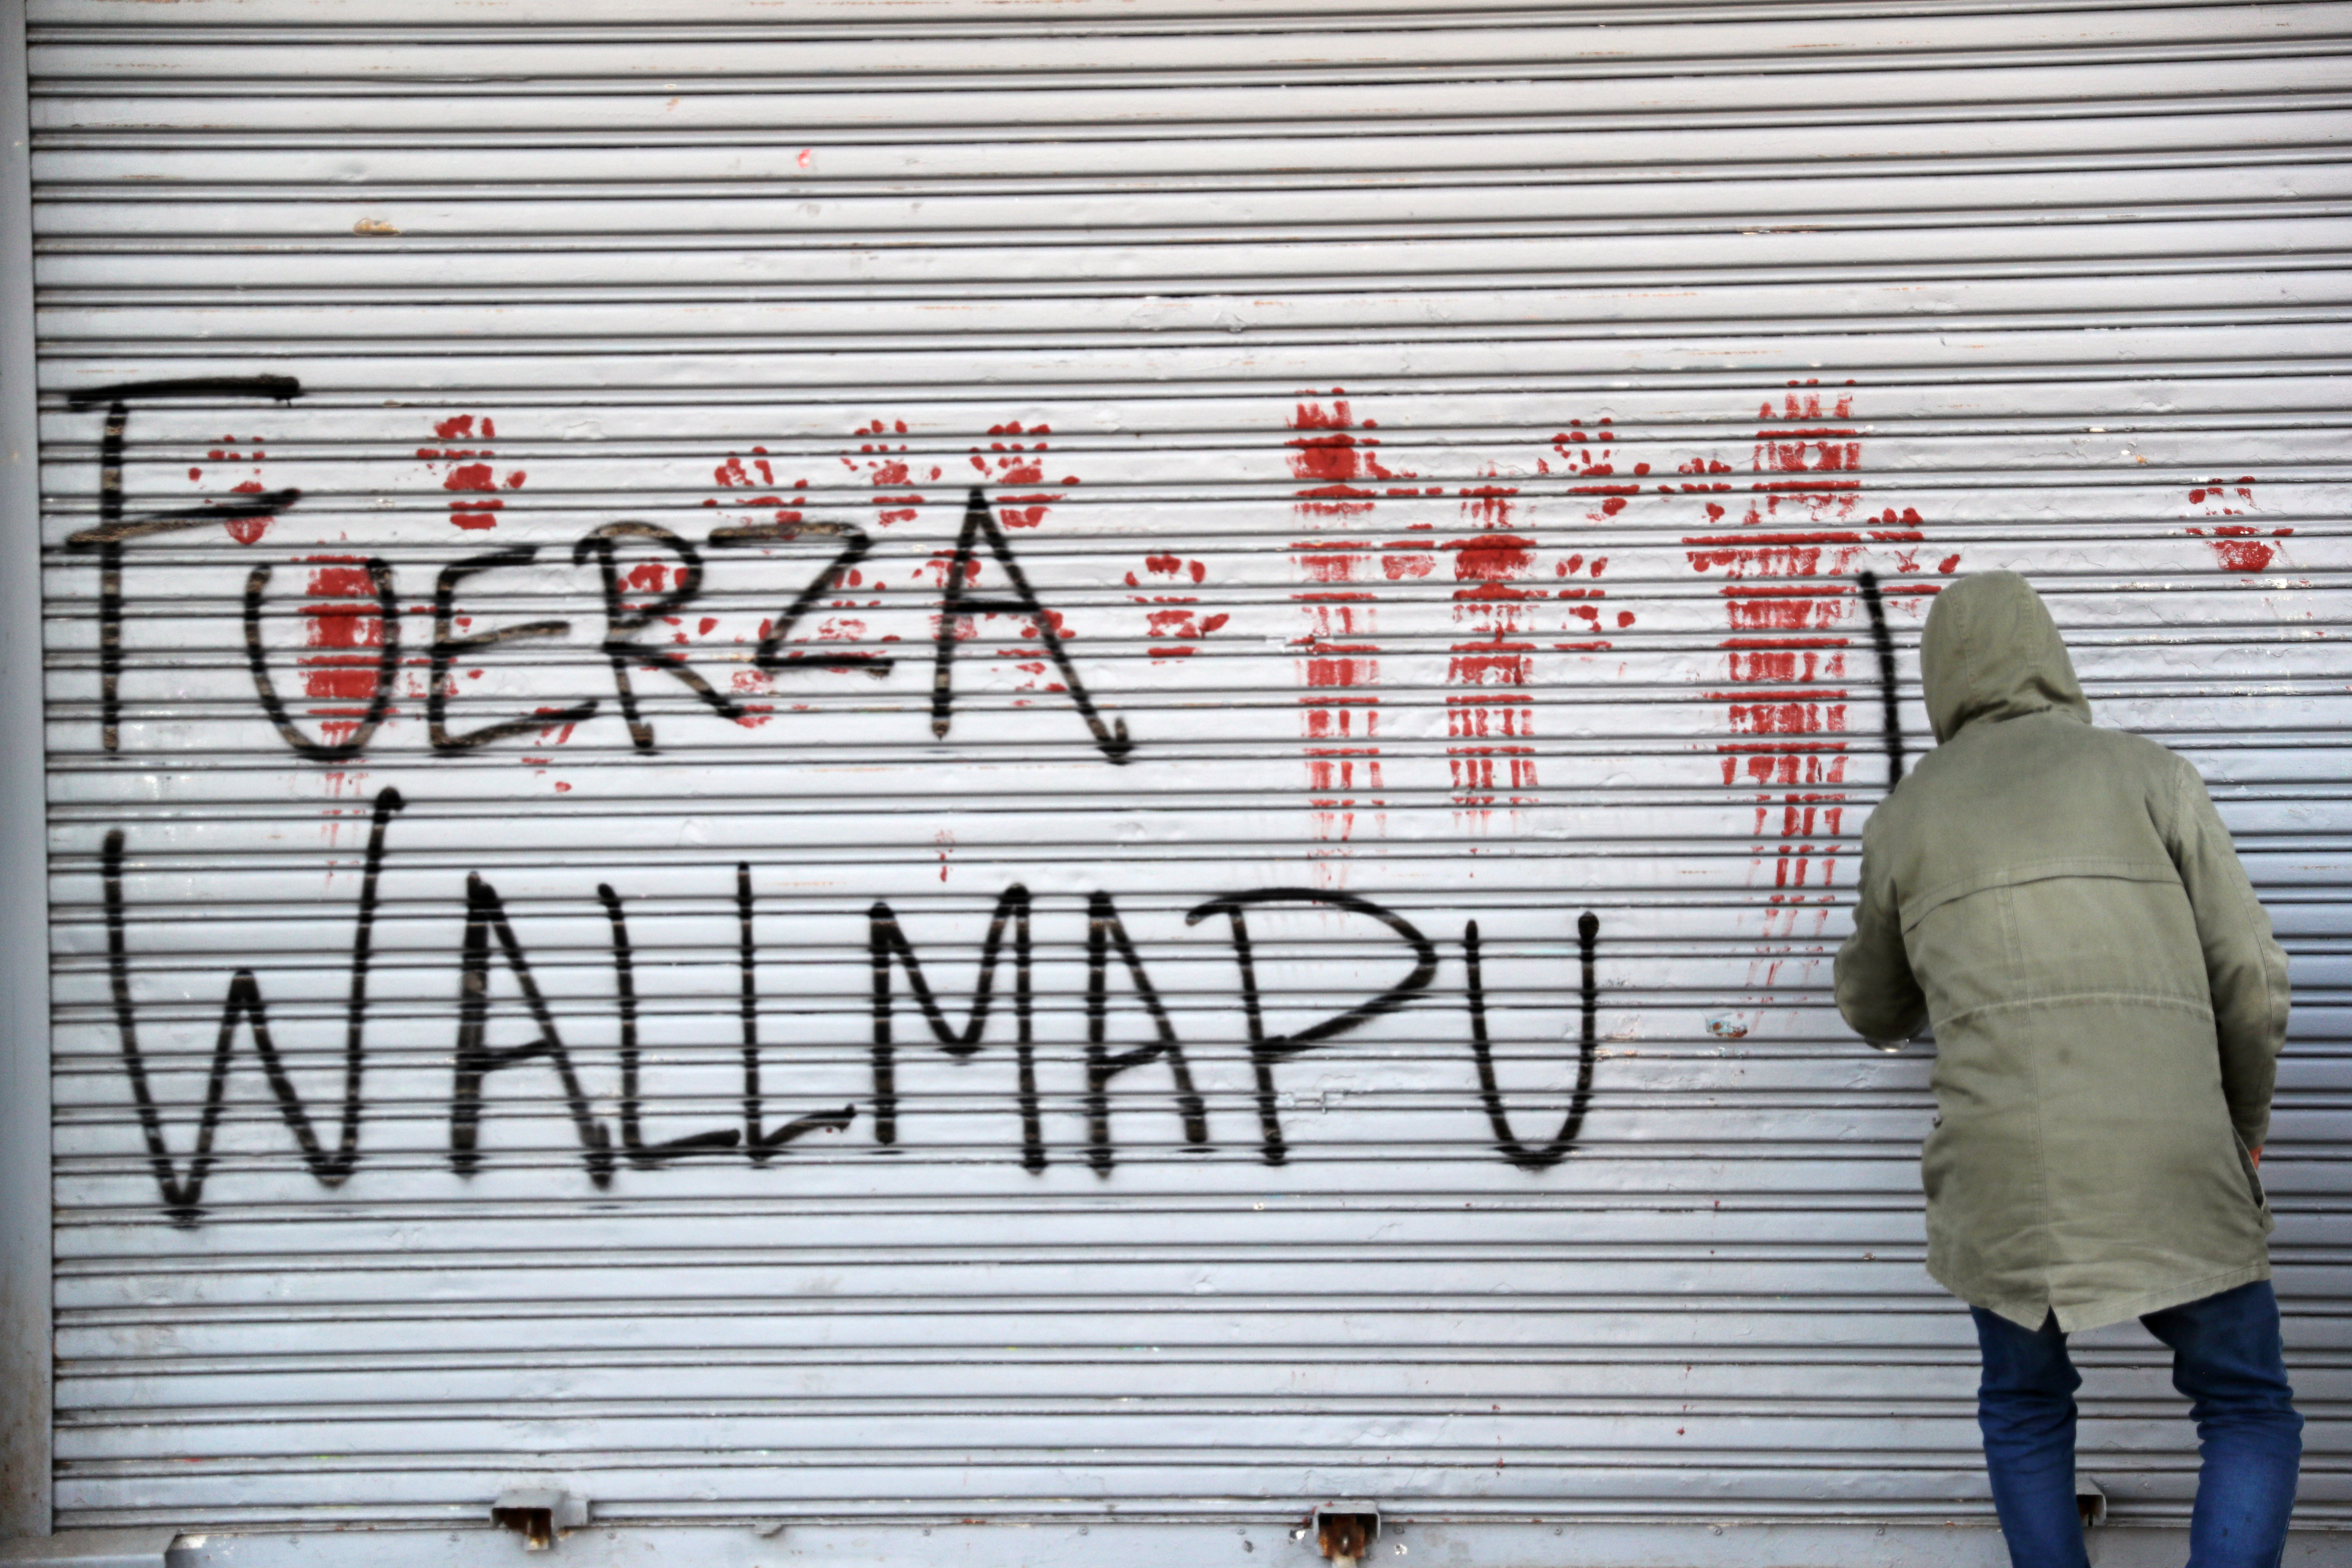 Un manifestante scrive graffiti a sostegno dei Mapuche a Santiago del Cile (Reuters/Ivan Alvarado)